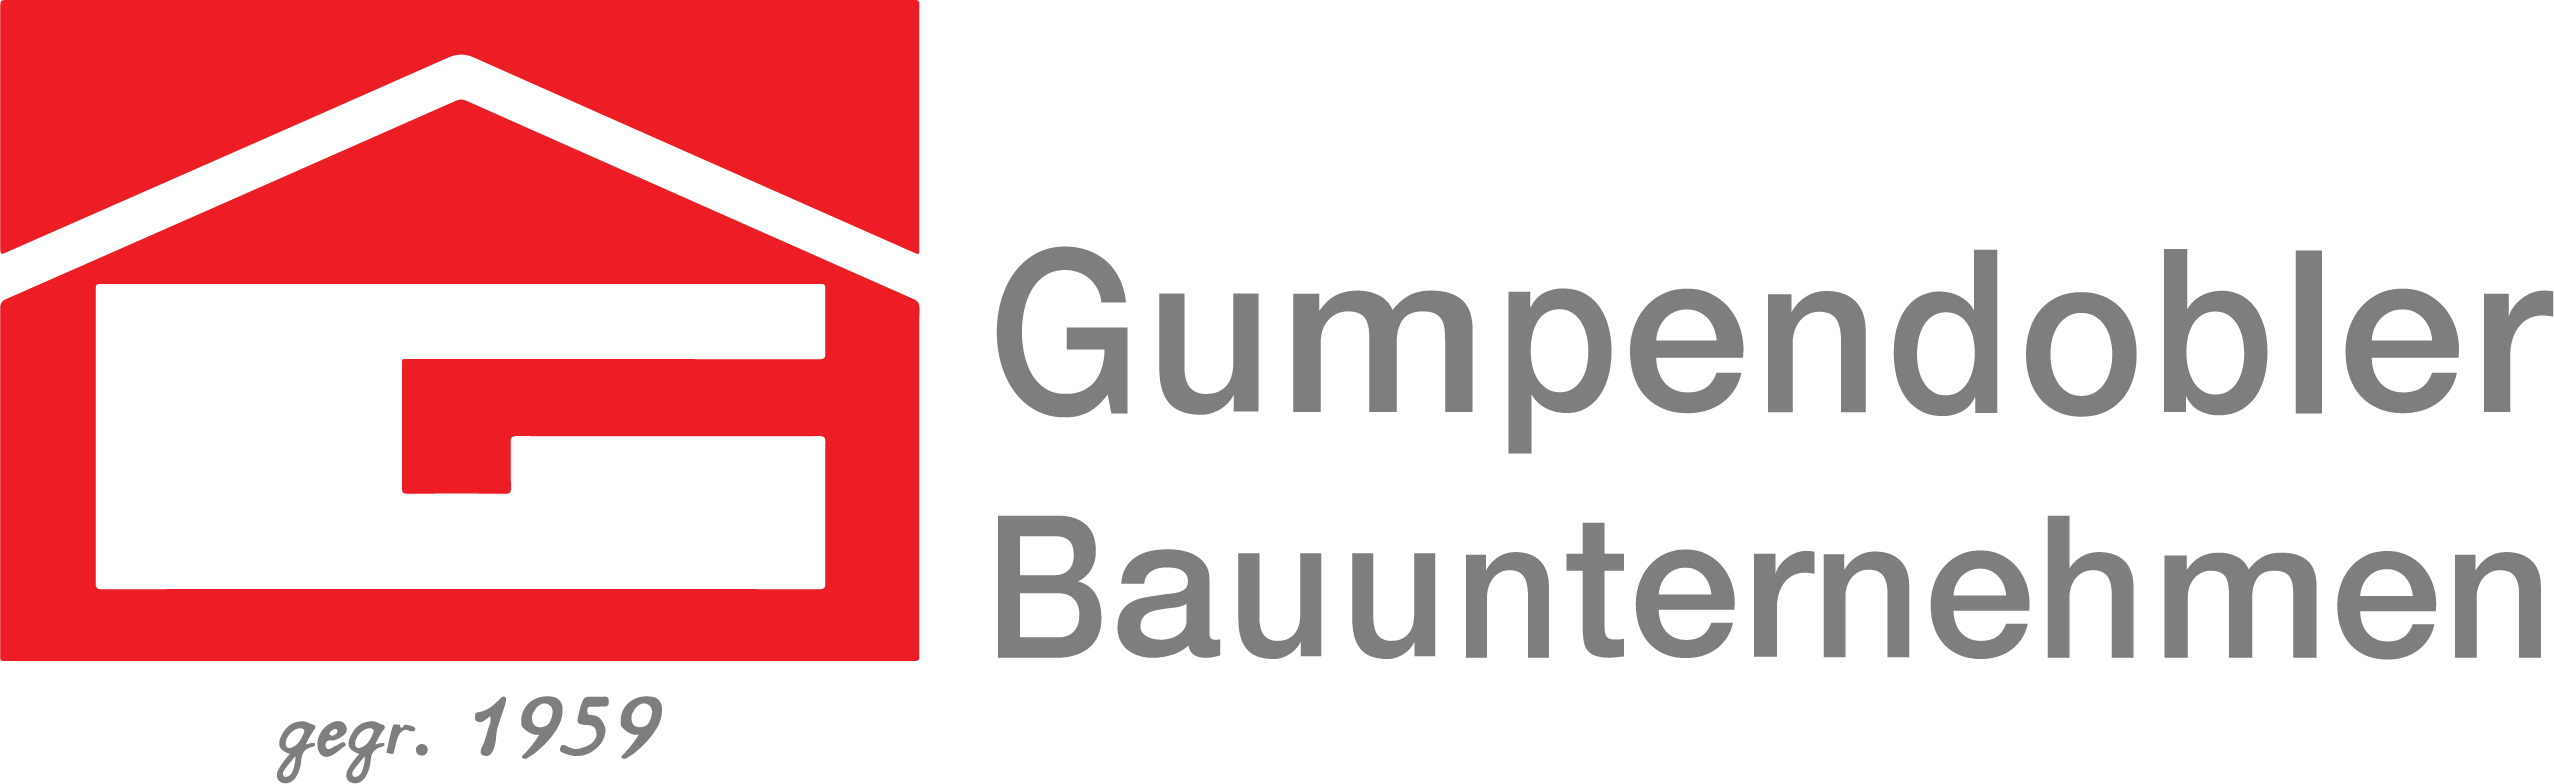 Gumpendobler Logo text freigestellt